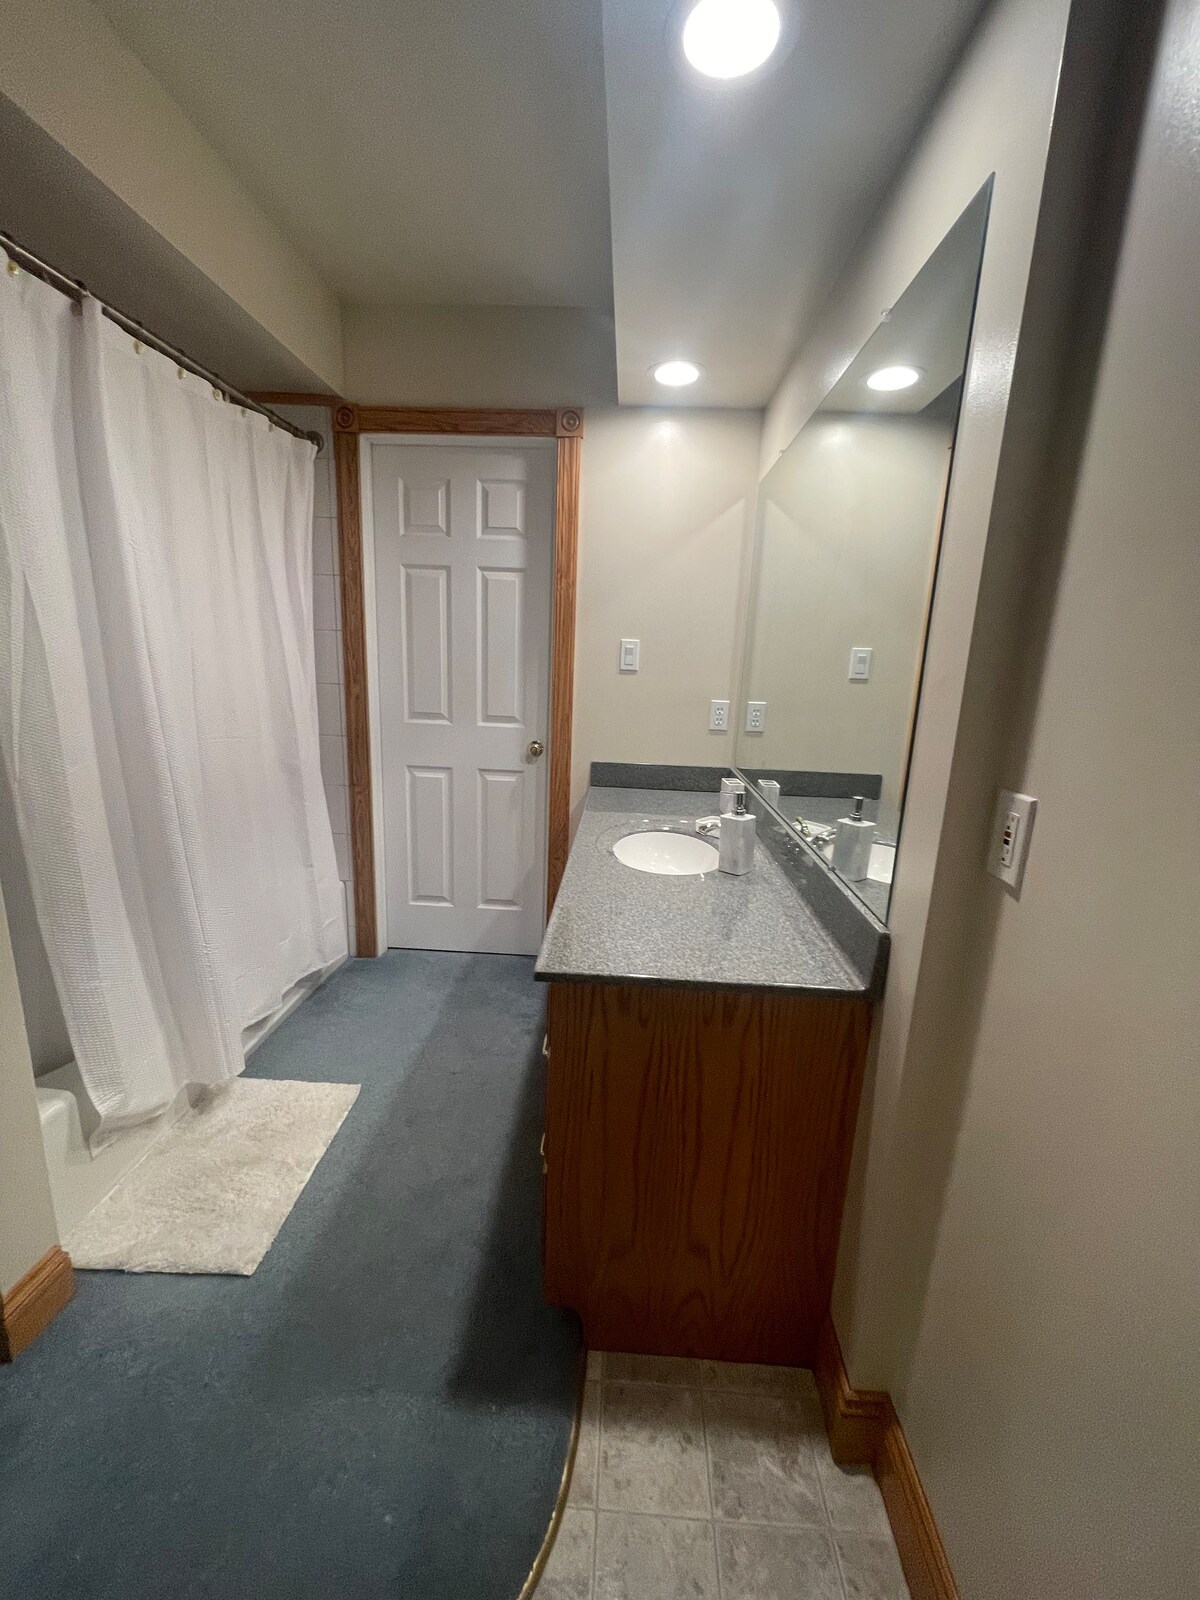 Alojamiento en sotano con 1 habitaciónsala y baño.